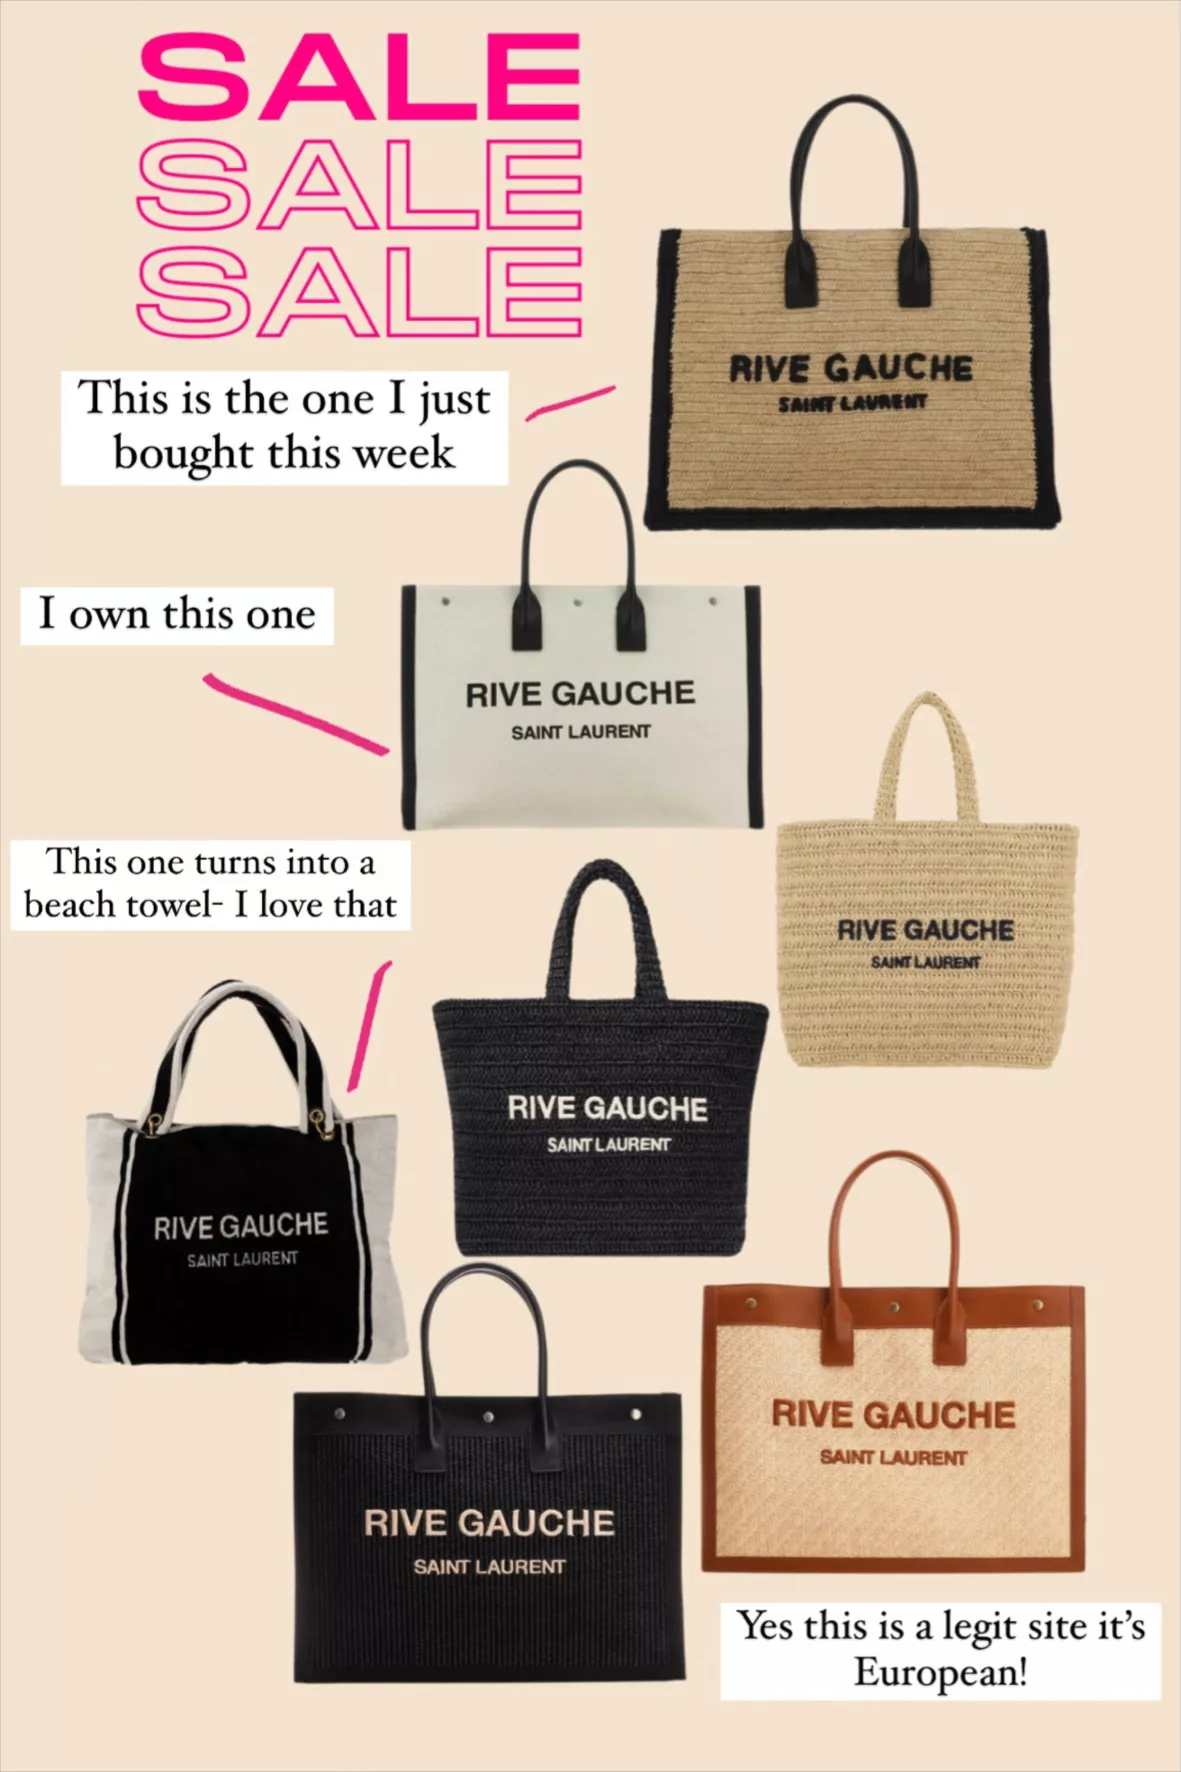 Saint Laurent Rive Gauche Shopping Bag - Farfetch